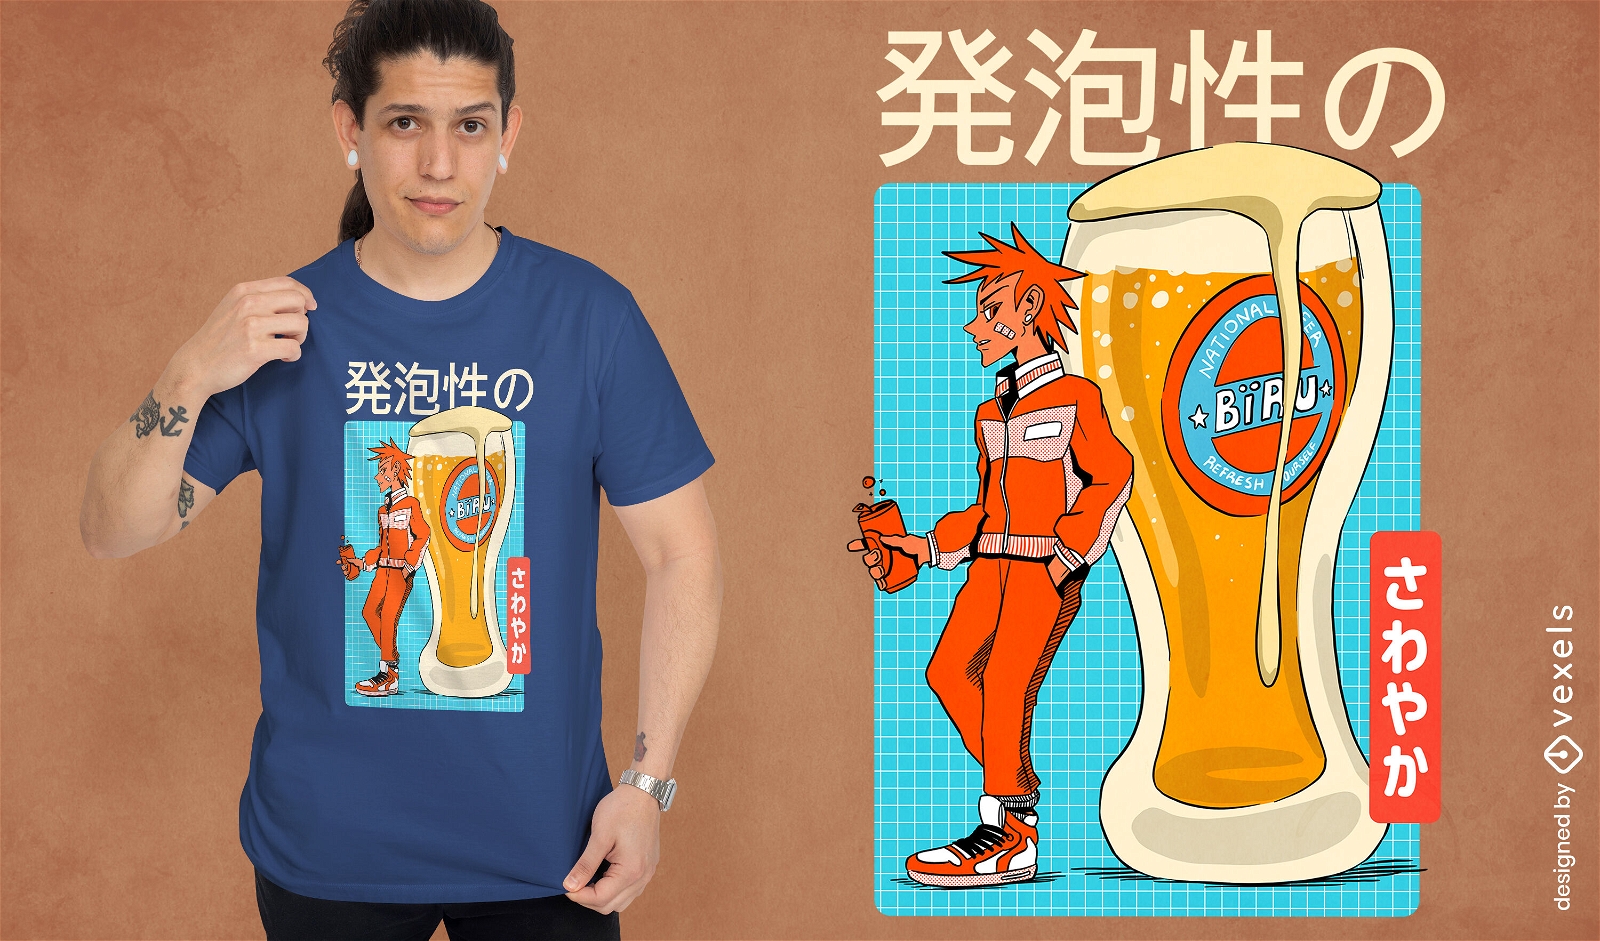 Dise?o de camiseta de cerveza anime.